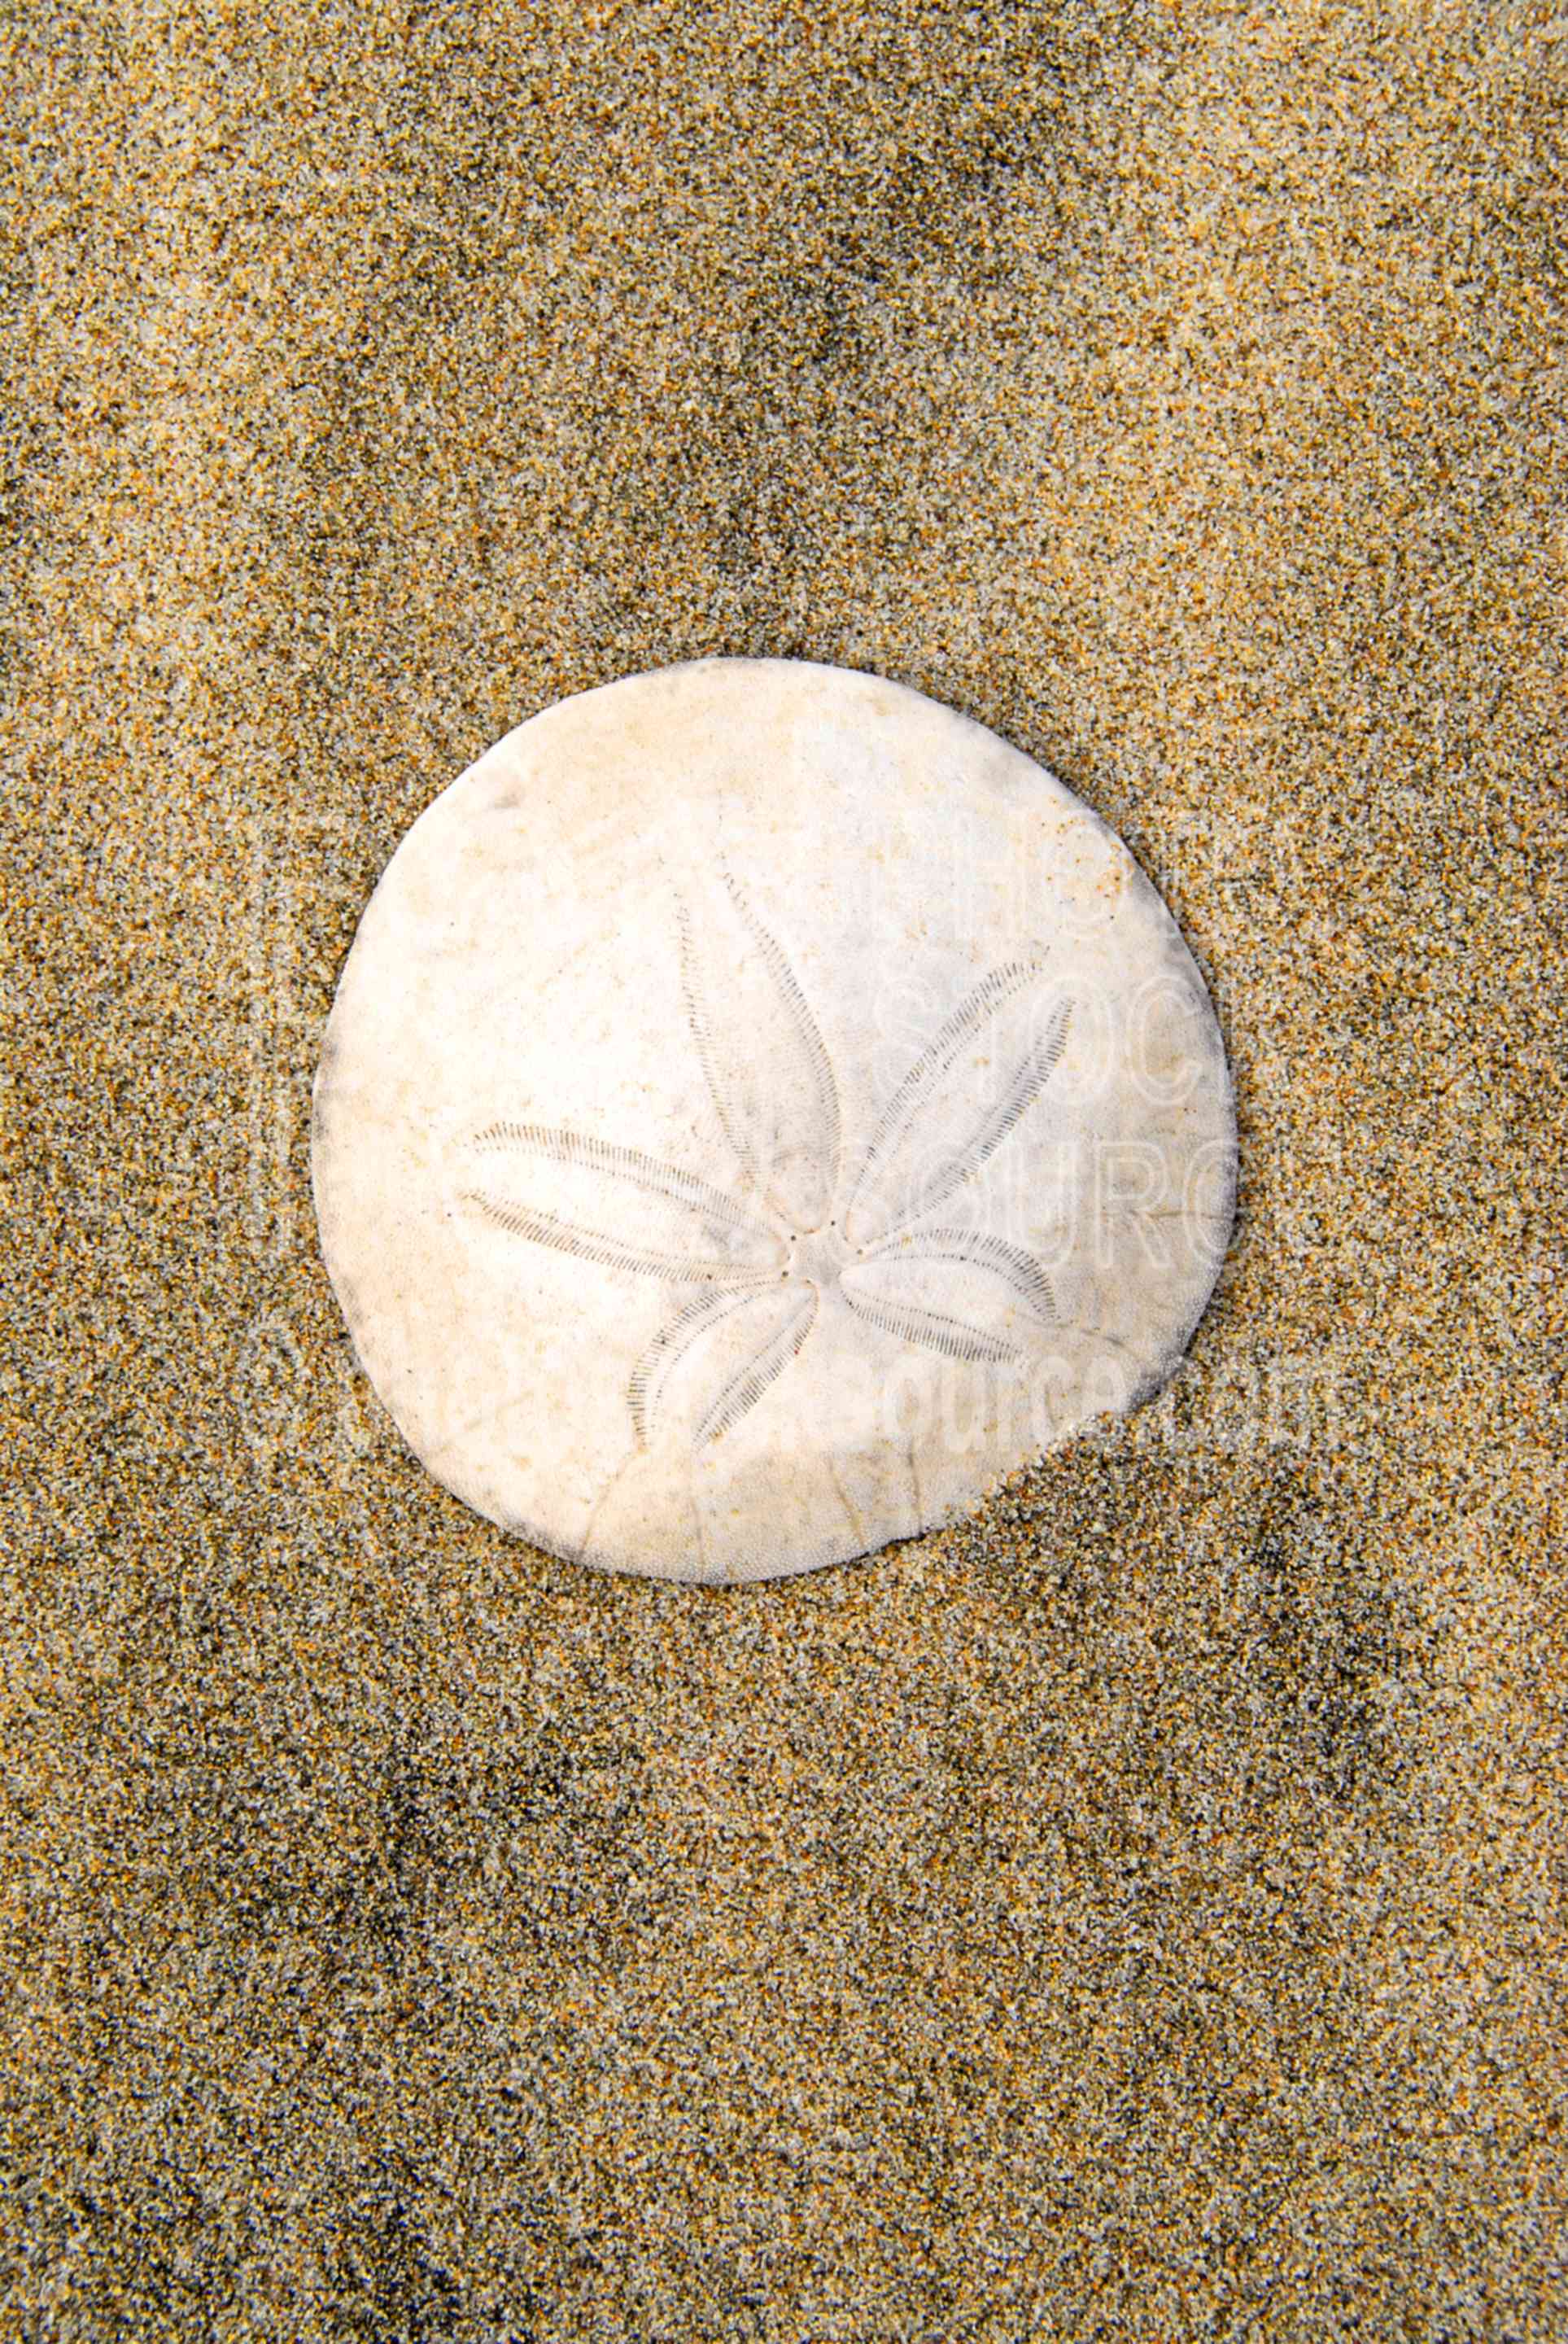 Sand Dollar,sand,sea urchin,animals